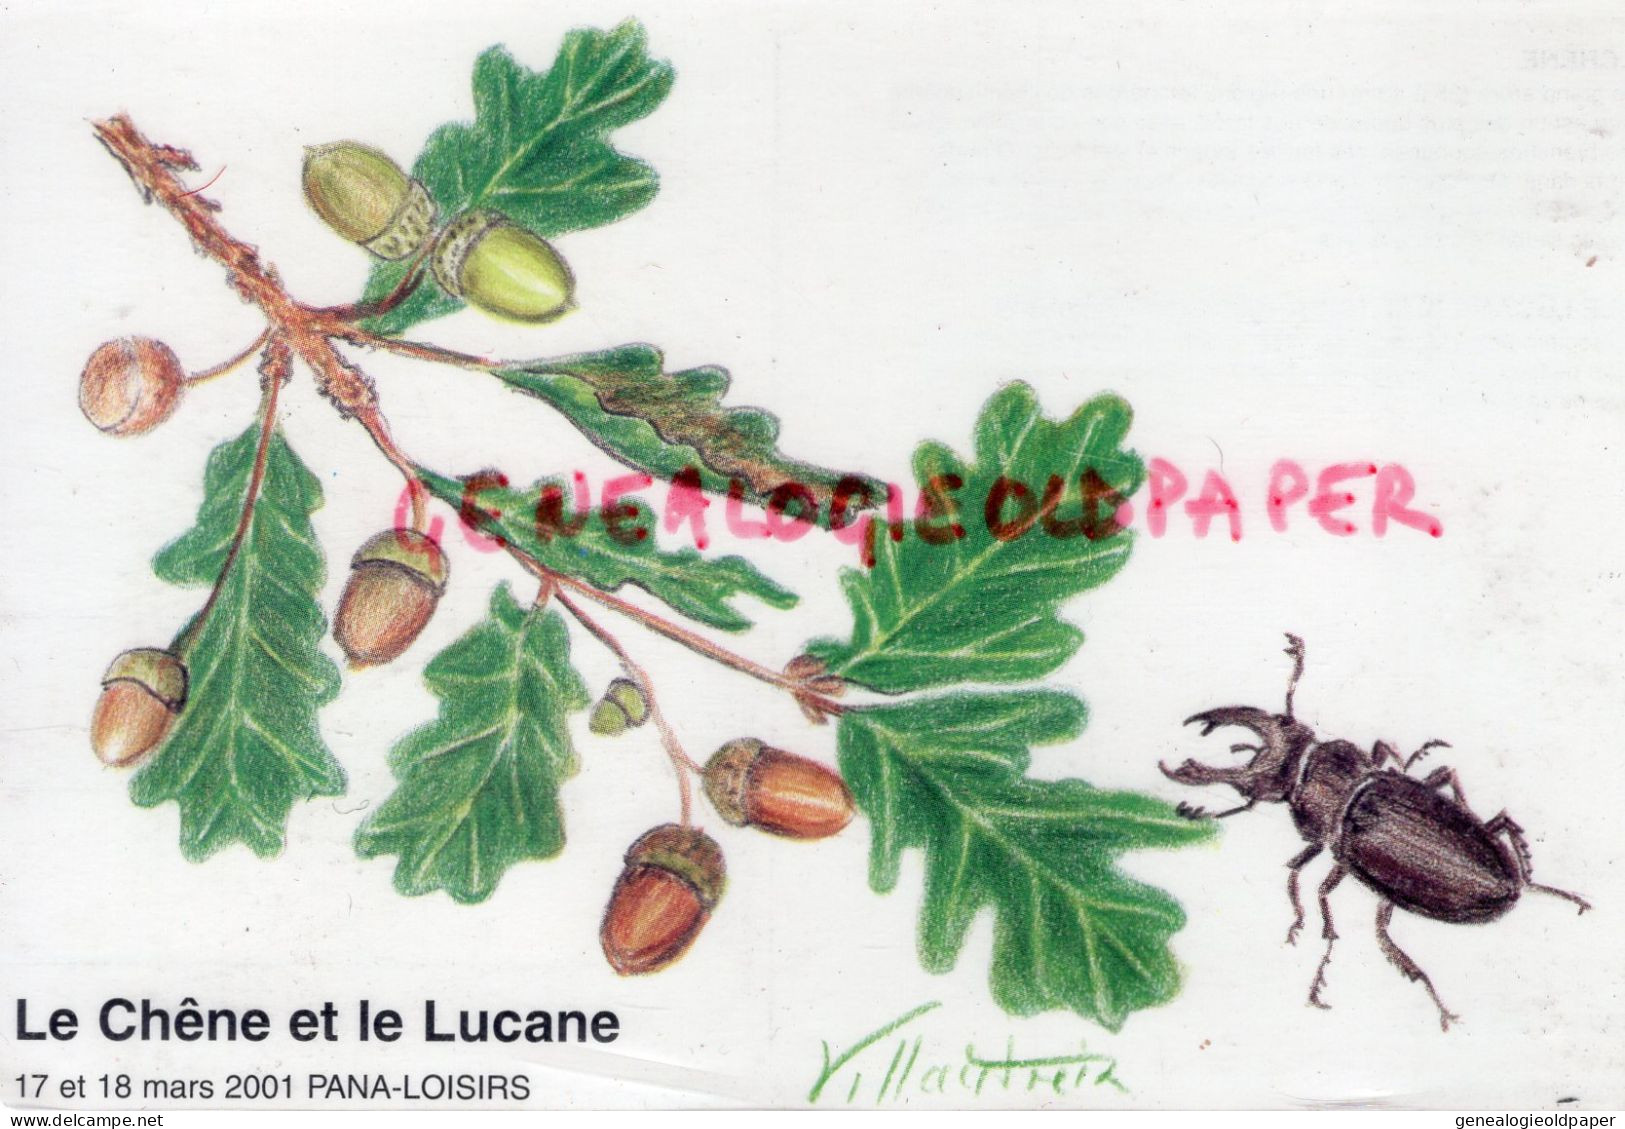 87- PANAZOL- LE CHENE ET LE LUCANE- CERF VOLANT LUCANUS- EXPOSITION CARTES POSTALES-2001- ILLUSTRATEUR VILLAUTREIX - Panazol